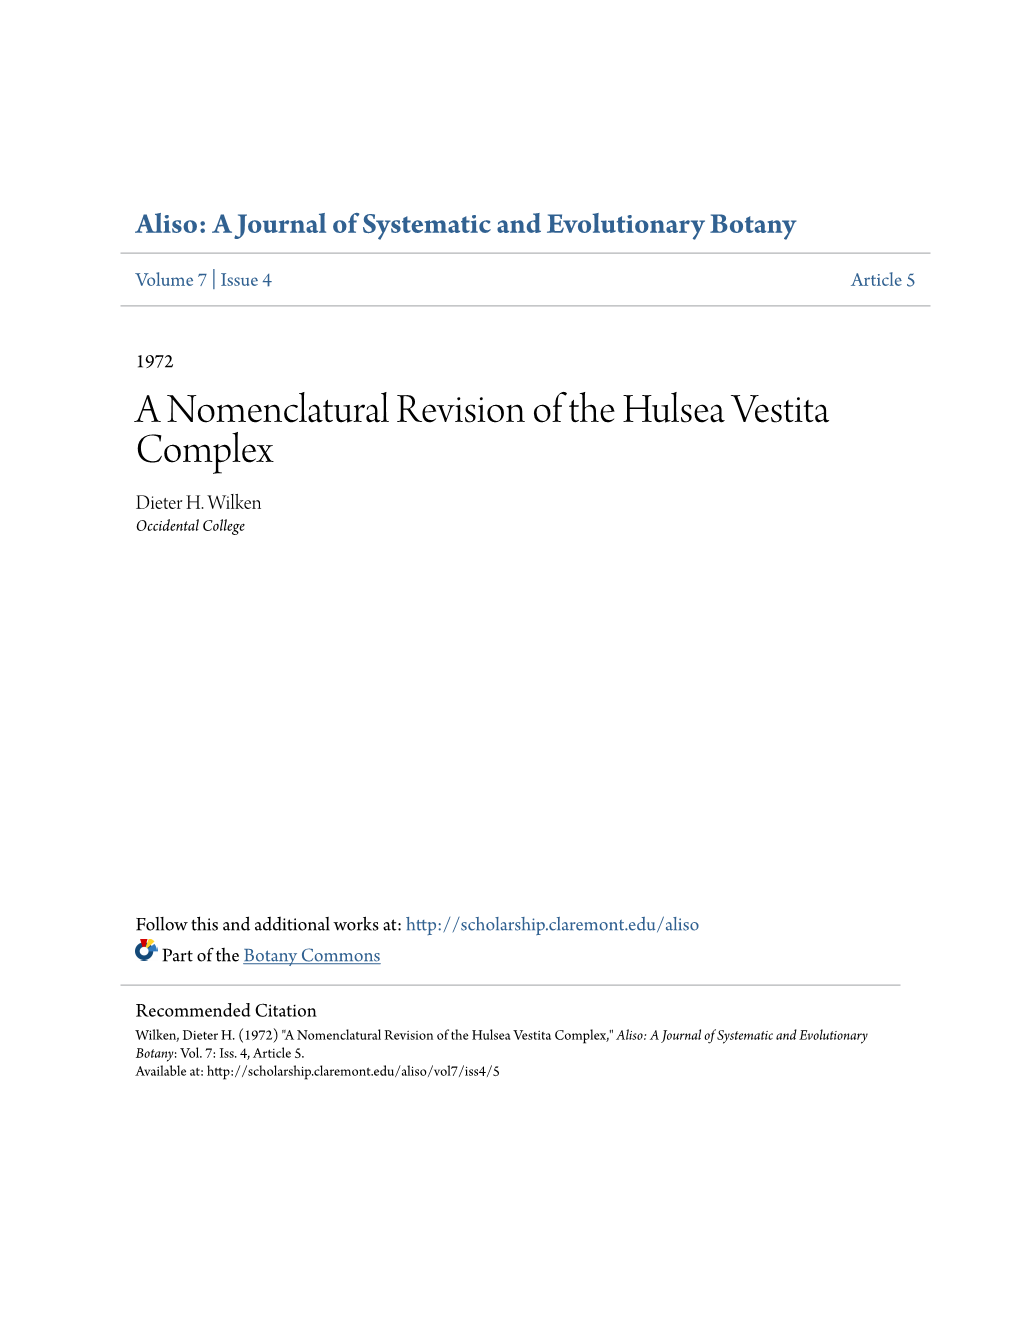 A Nomenclatural Revision of the Hulsea Vestita Complex Dieter H